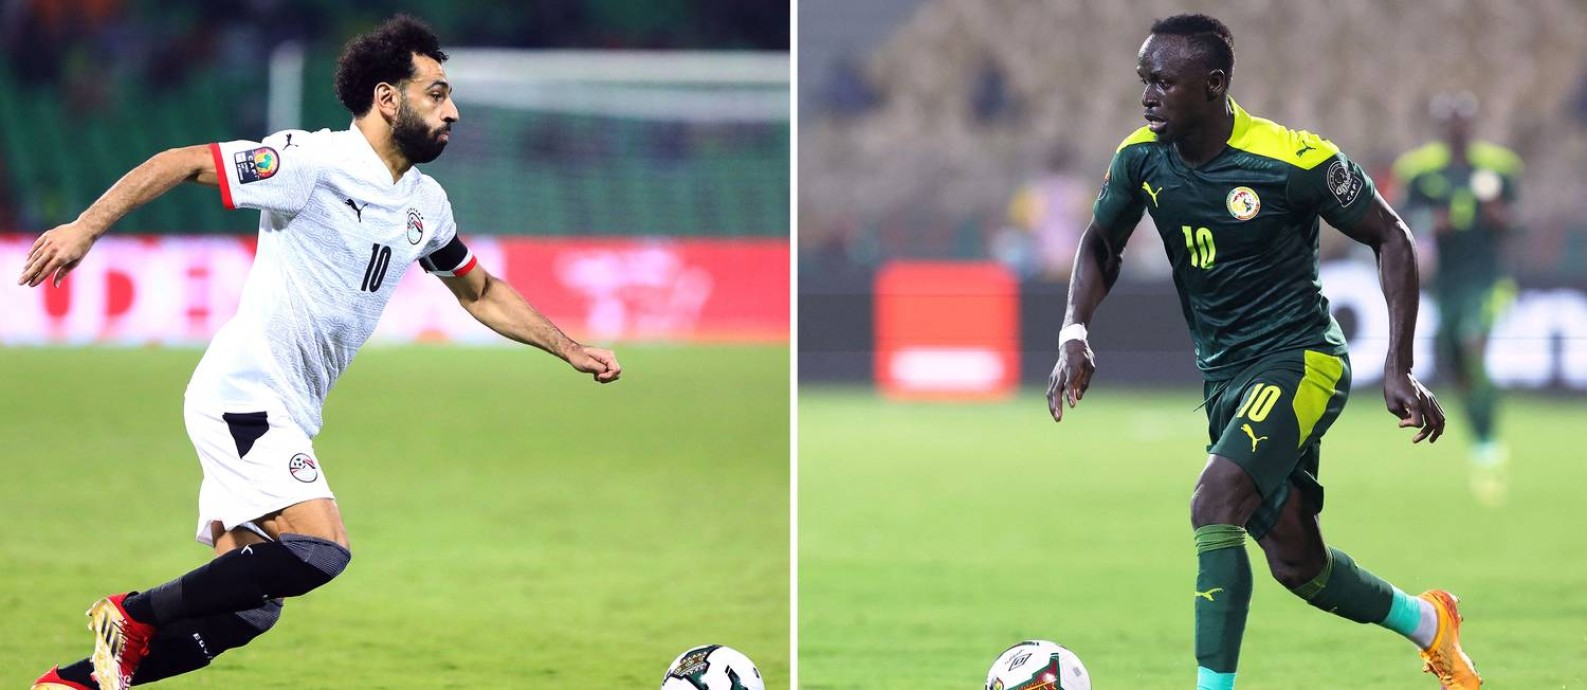 Salah e Mané são os dois maiores nomes do futebol africano na atualidade Foto: AFP